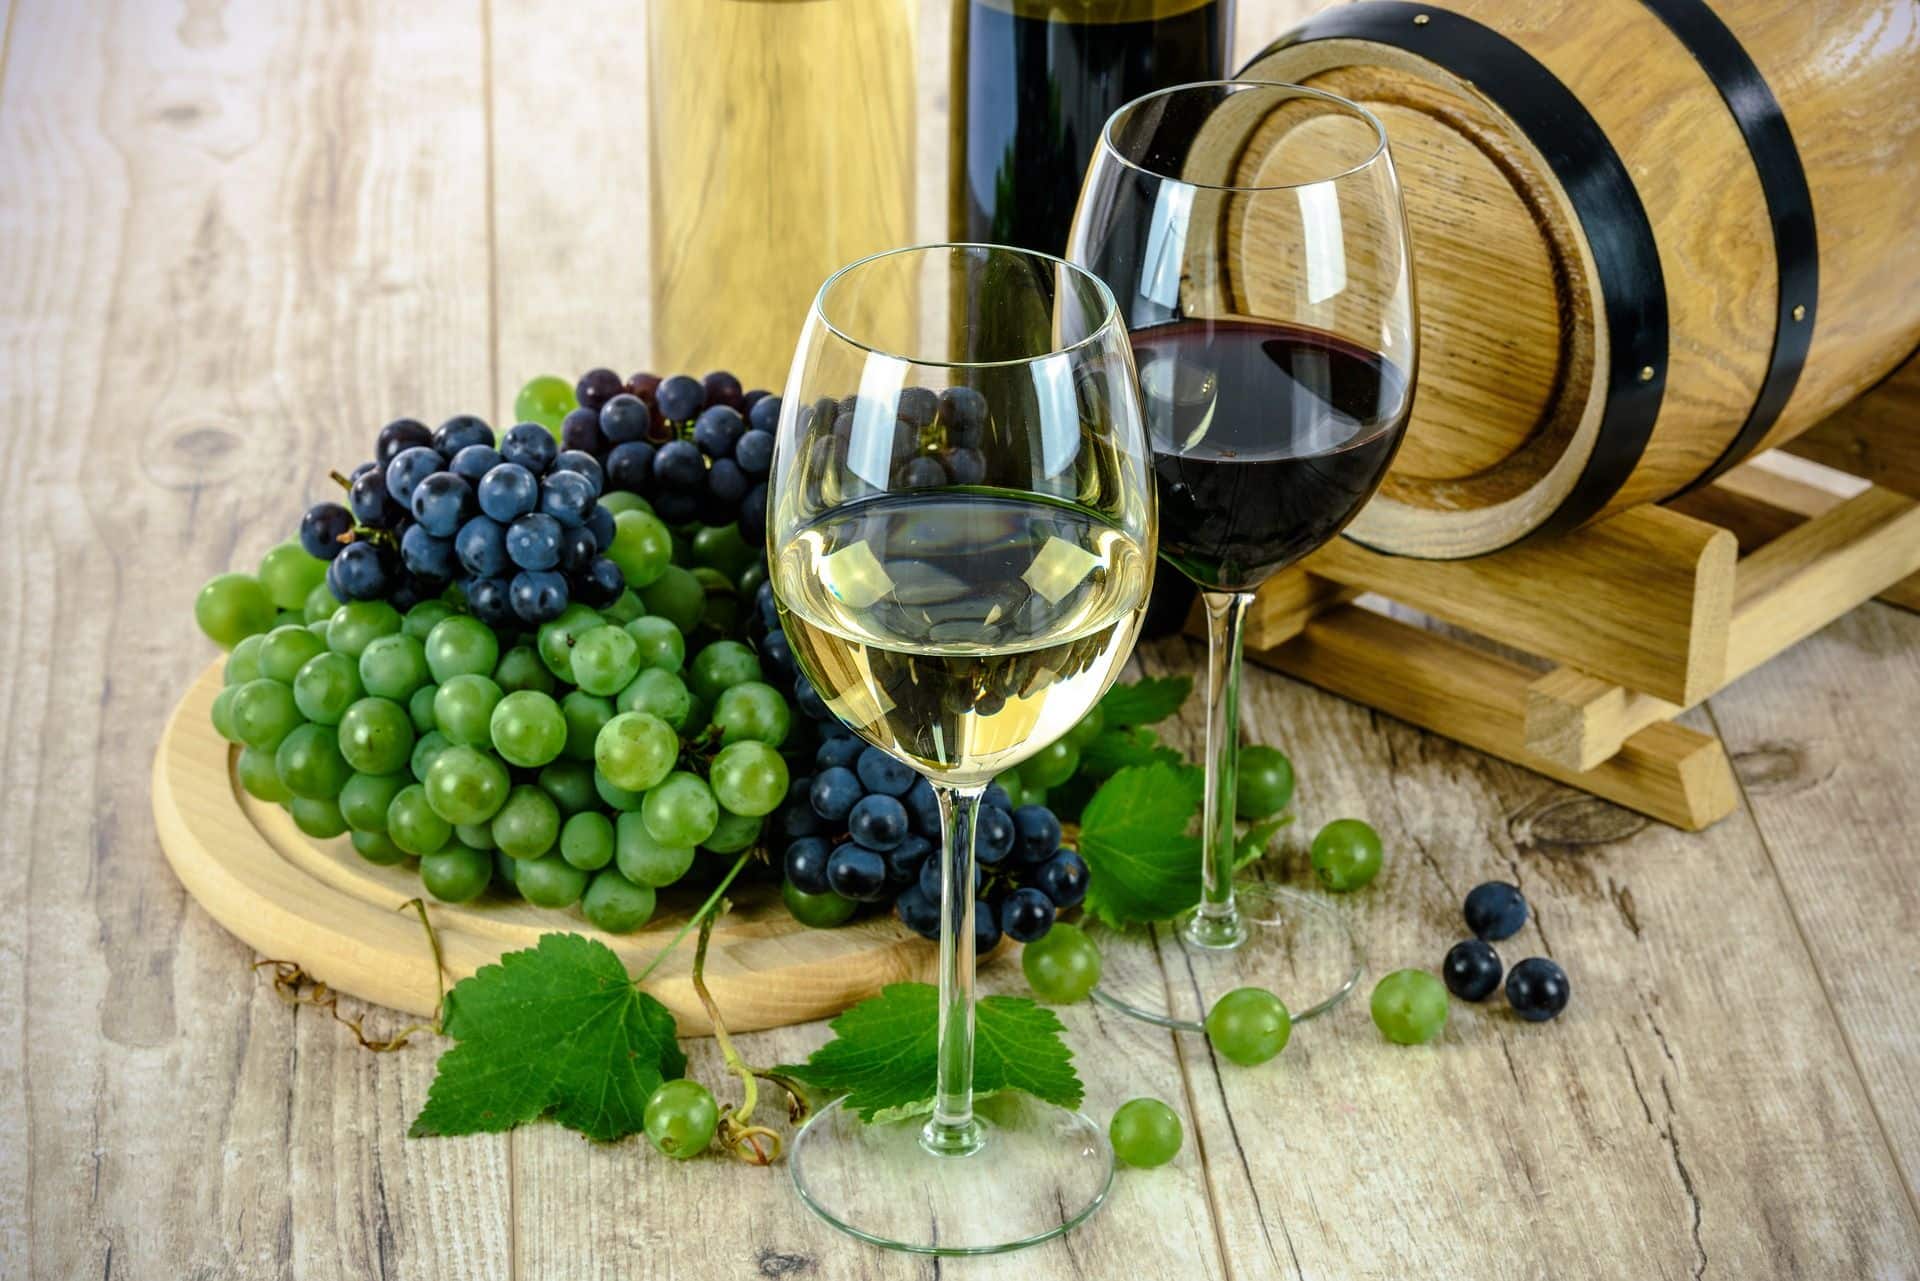 מכירת יין משביחה את חוויית הארוחה ומעלה את הרווחיות למסעדה. צילומים pixabay